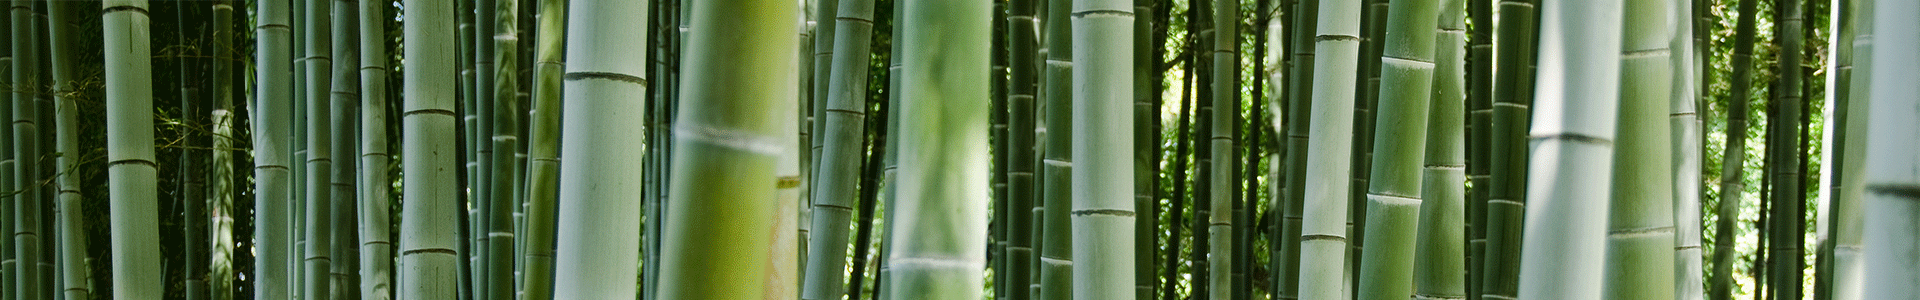 bambus banner